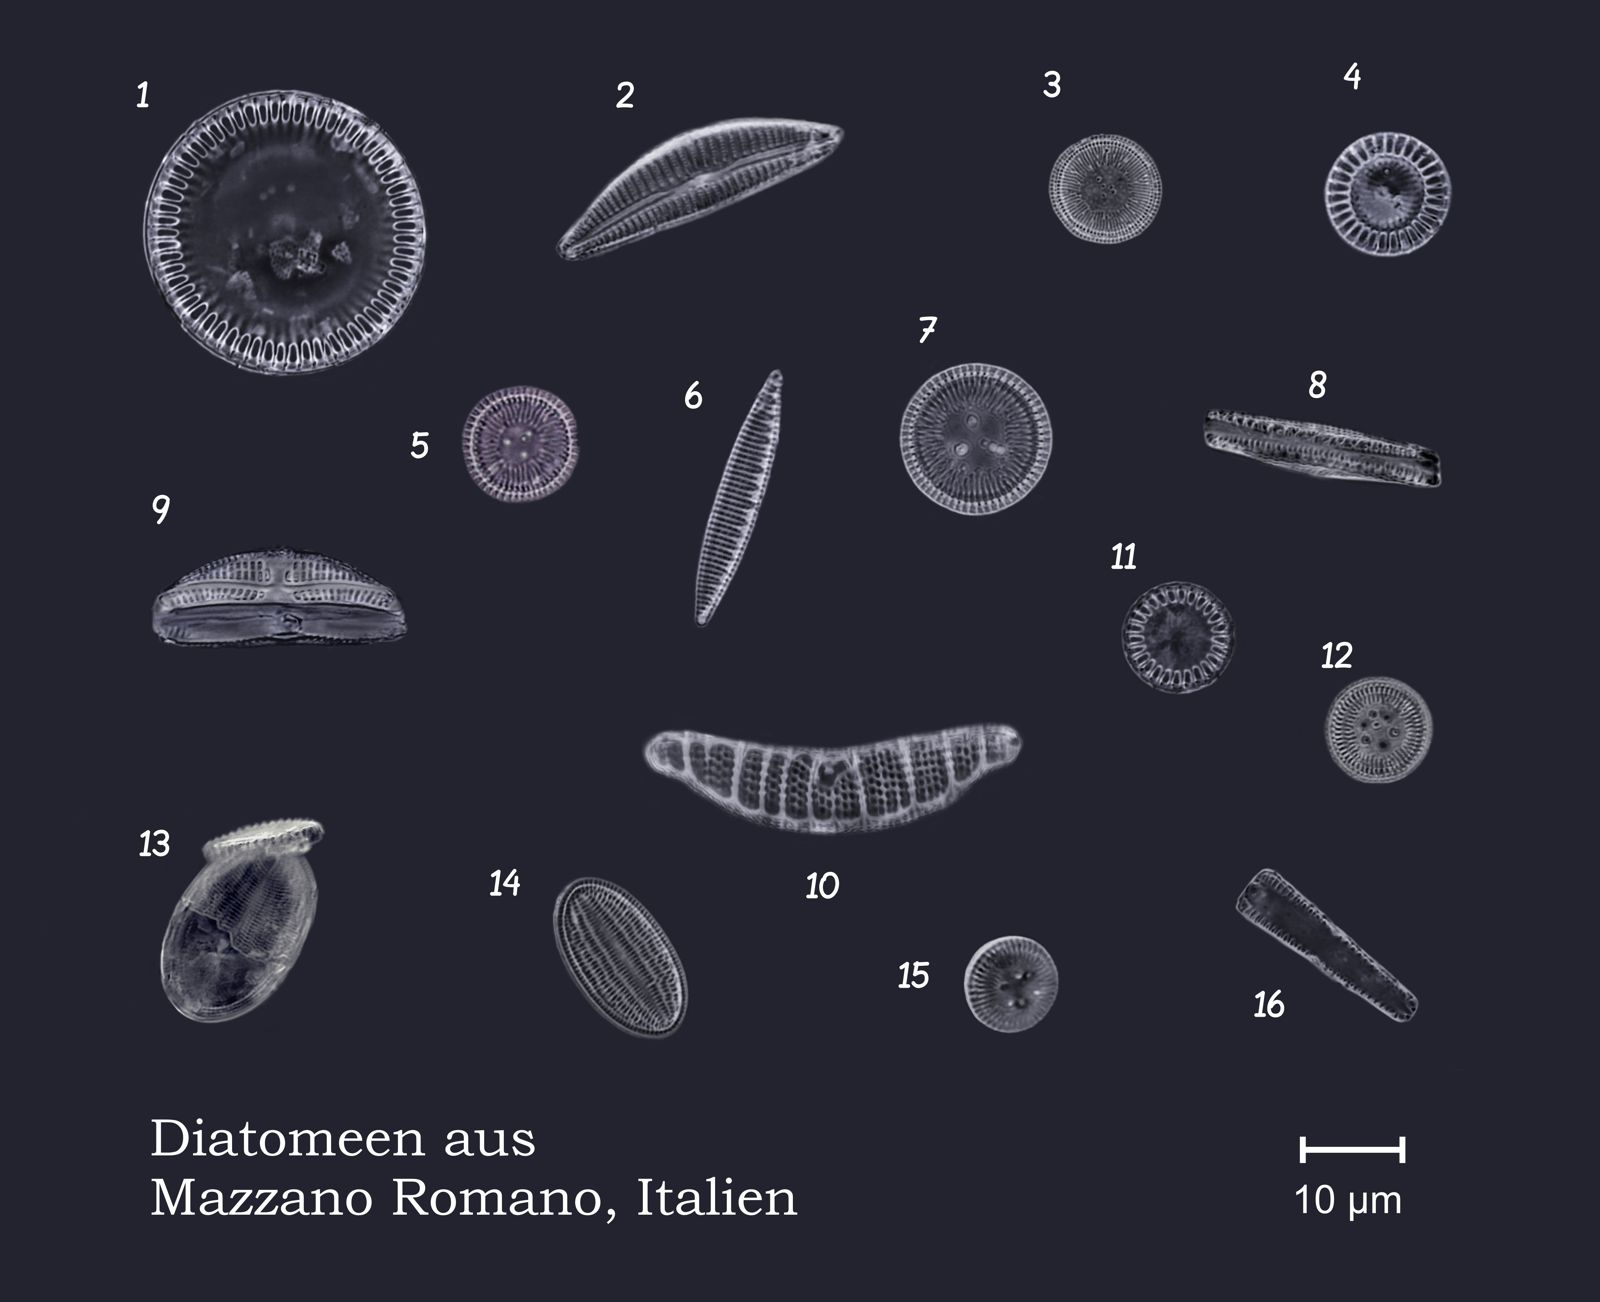 Diatomeen-Collage-Romana-1600px.jpg